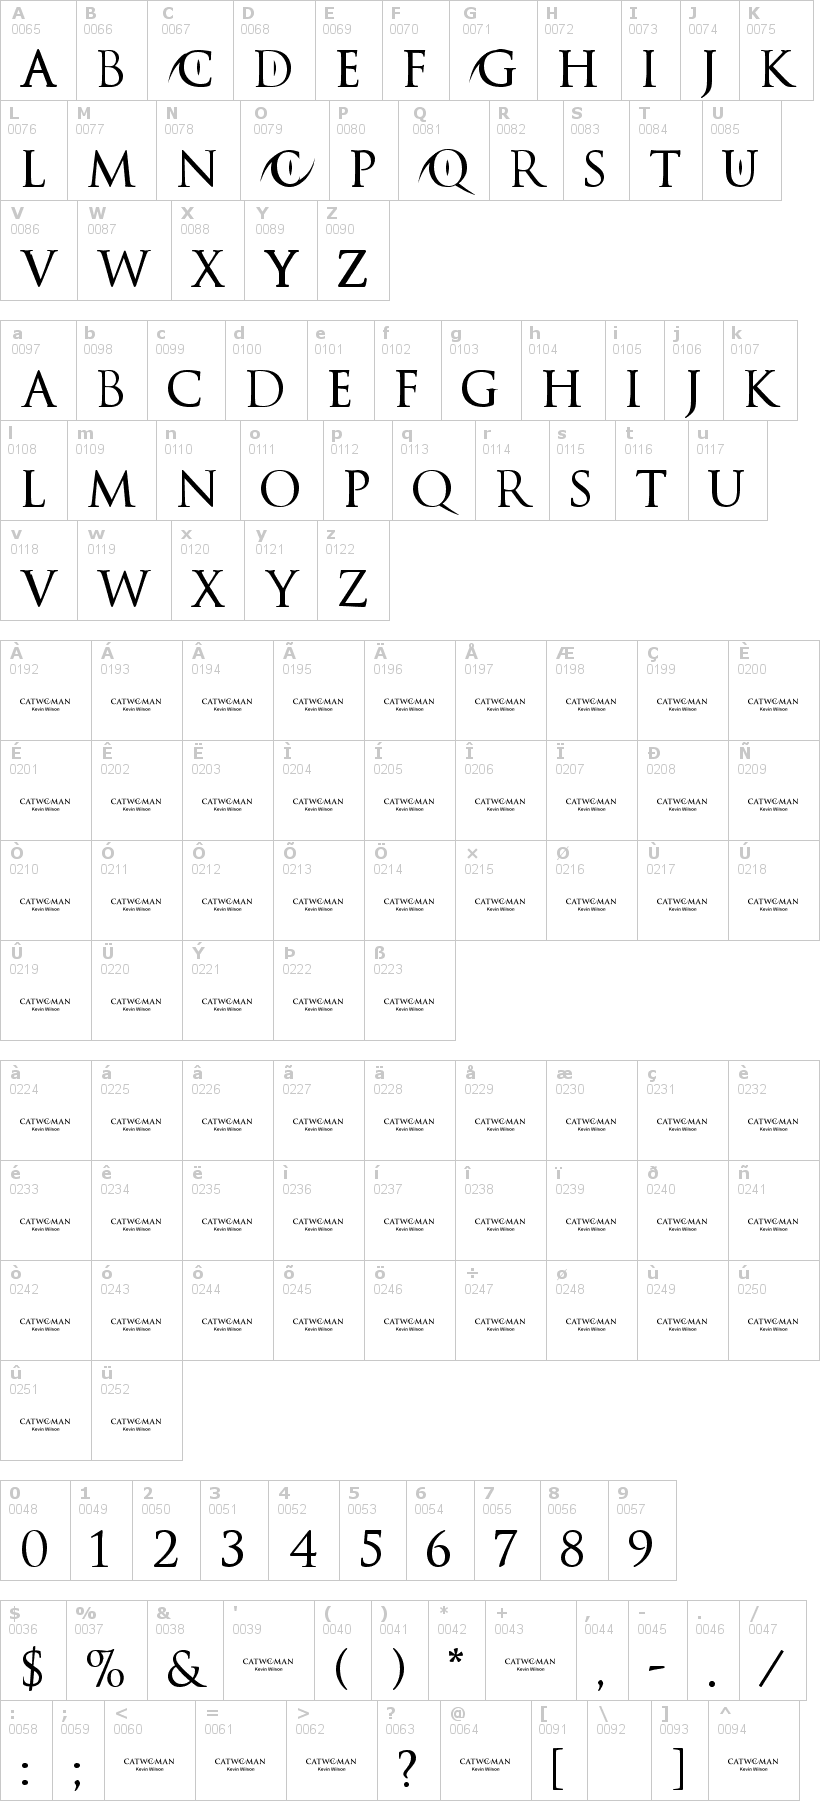 Lettere dell'alfabeto del font catwoman con le quali è possibile realizzare adesivi prespaziati